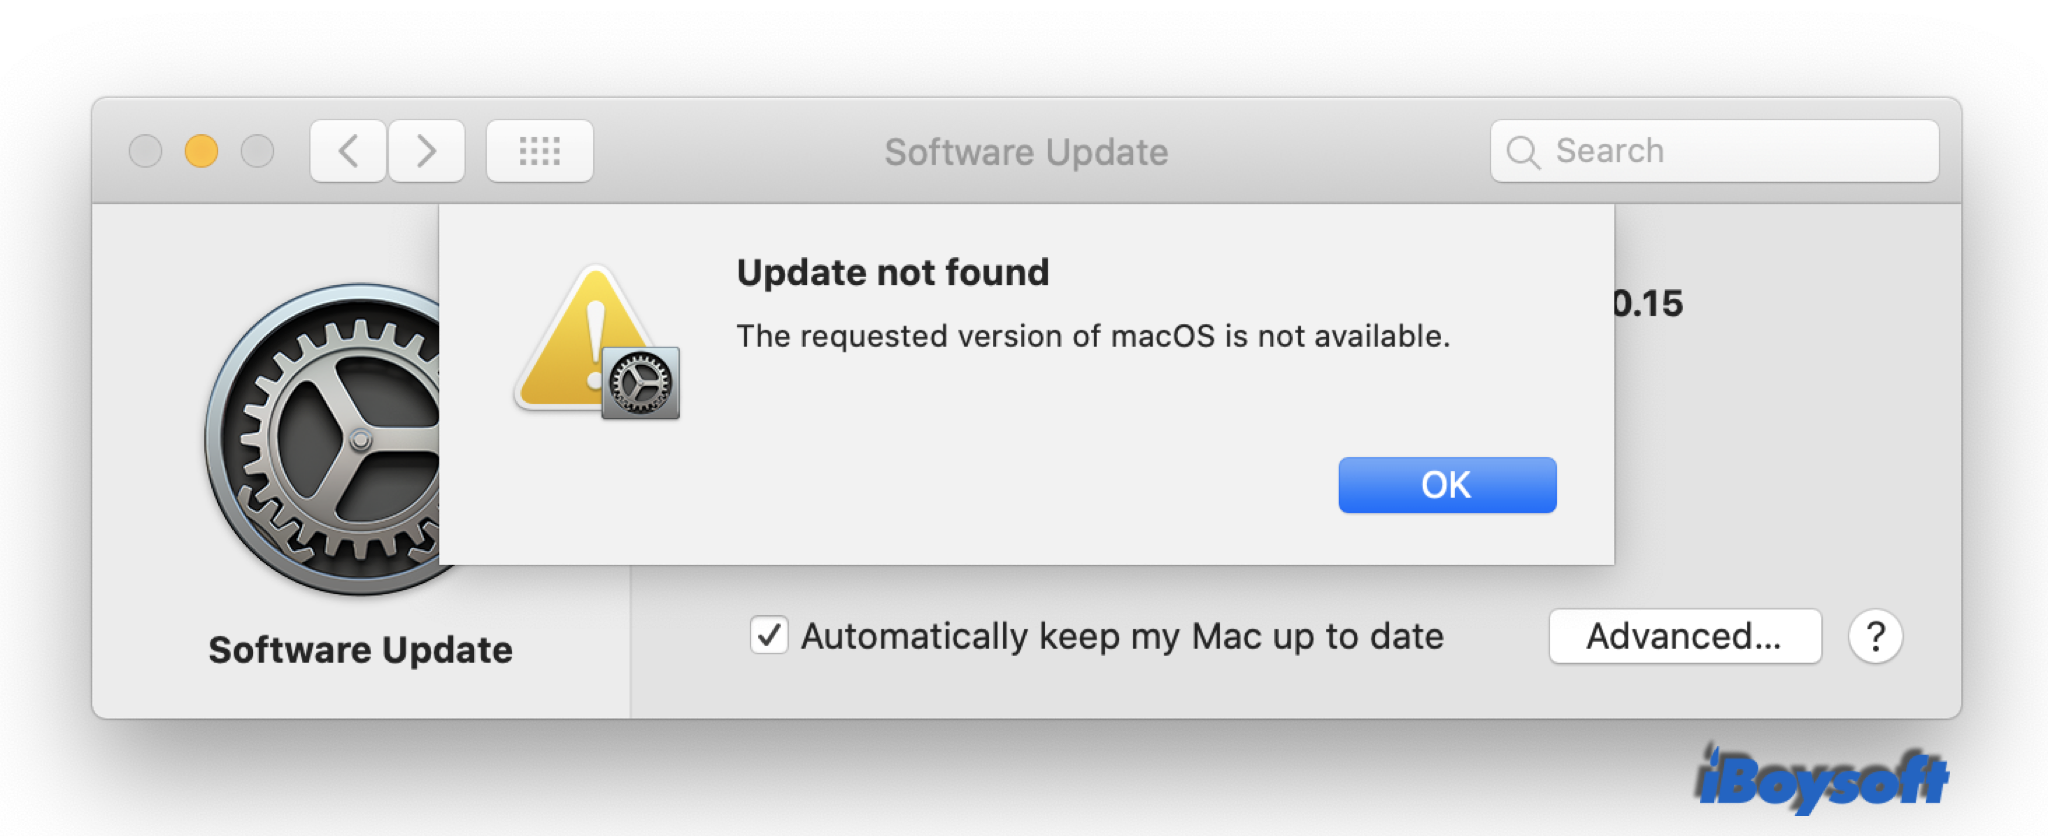 A versão solicitada do macOS não está disponível